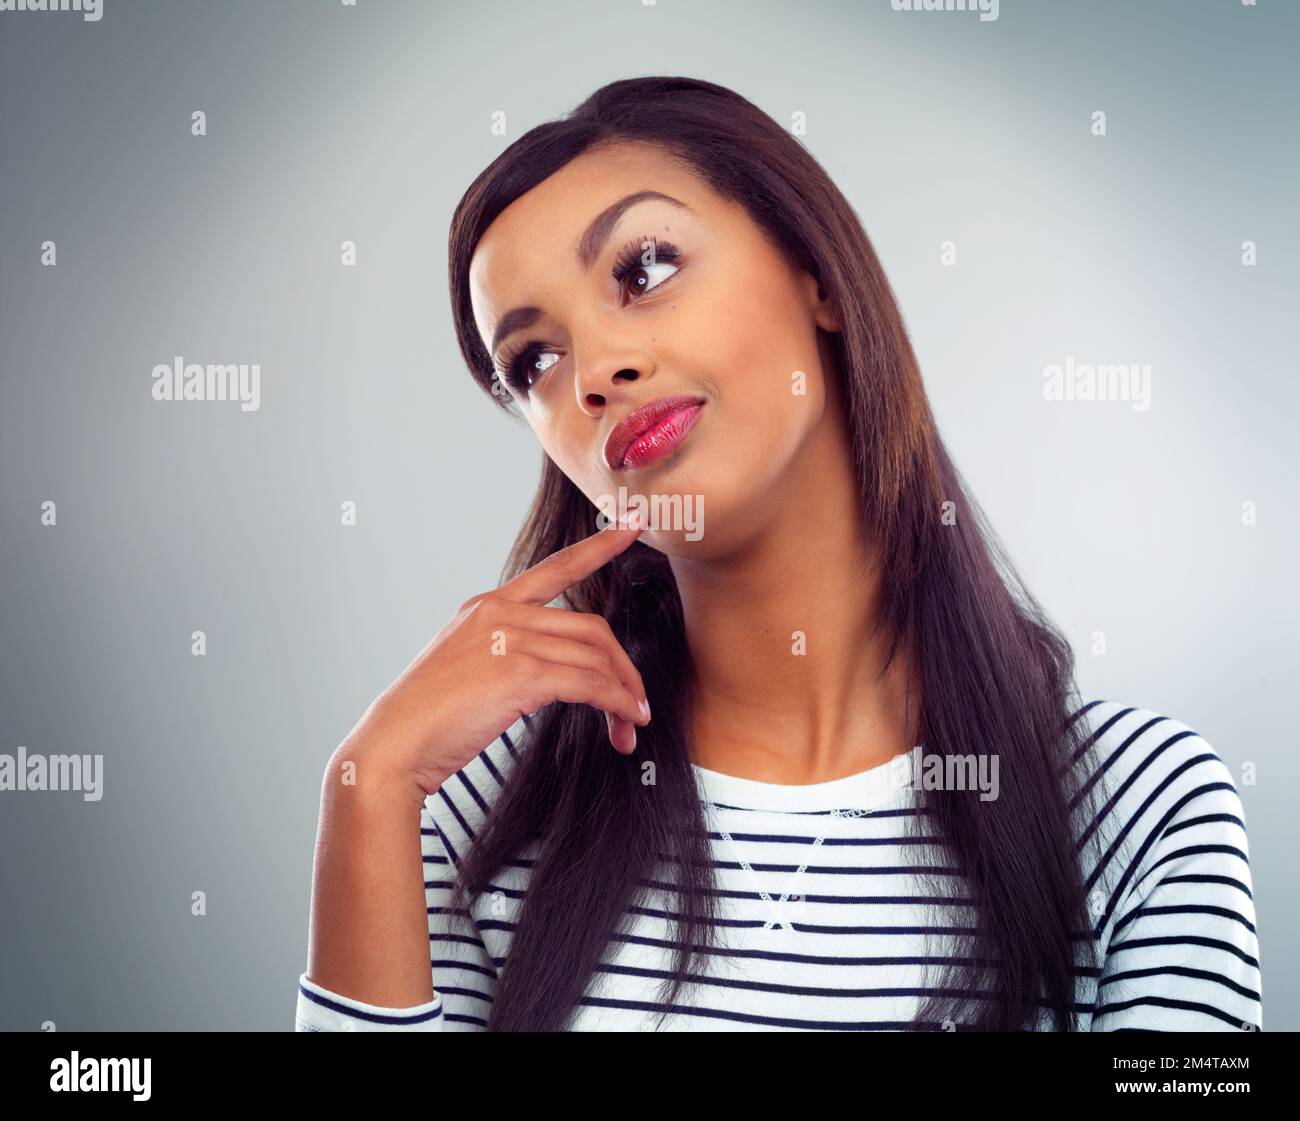 Ich denke über ihre nächste Pose nach. Eine junge Frau, die vor grauem Hintergrund posiert. Stockfoto